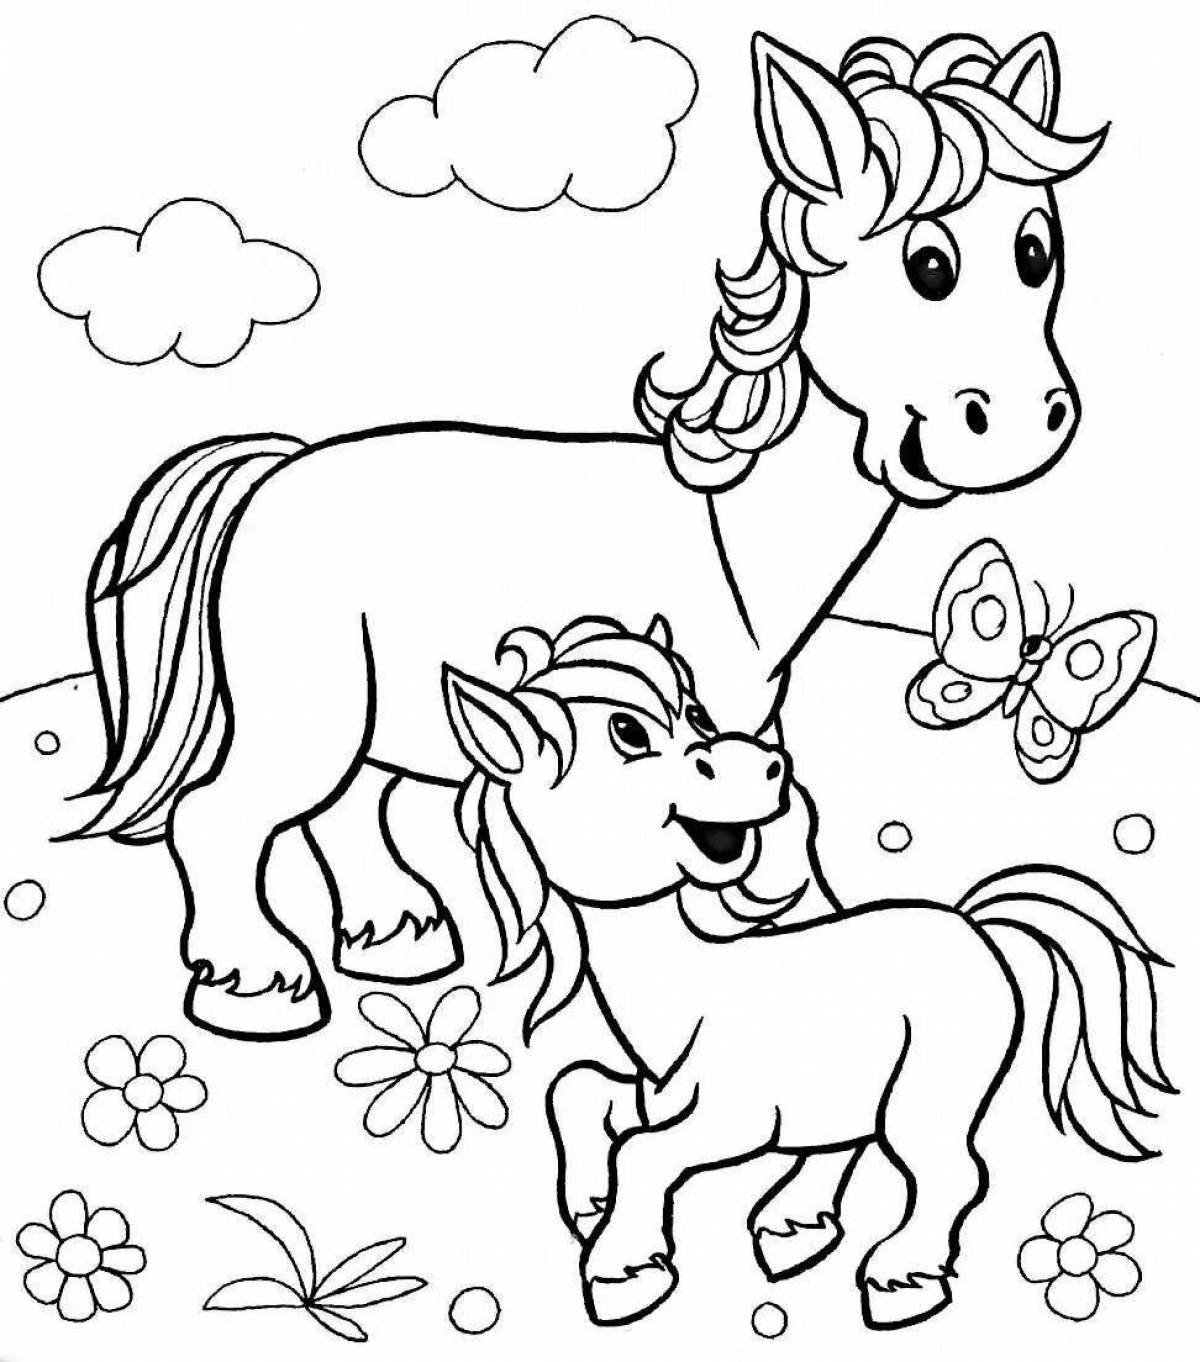 Королевская раскраска лошадь для детей 4-5 лет